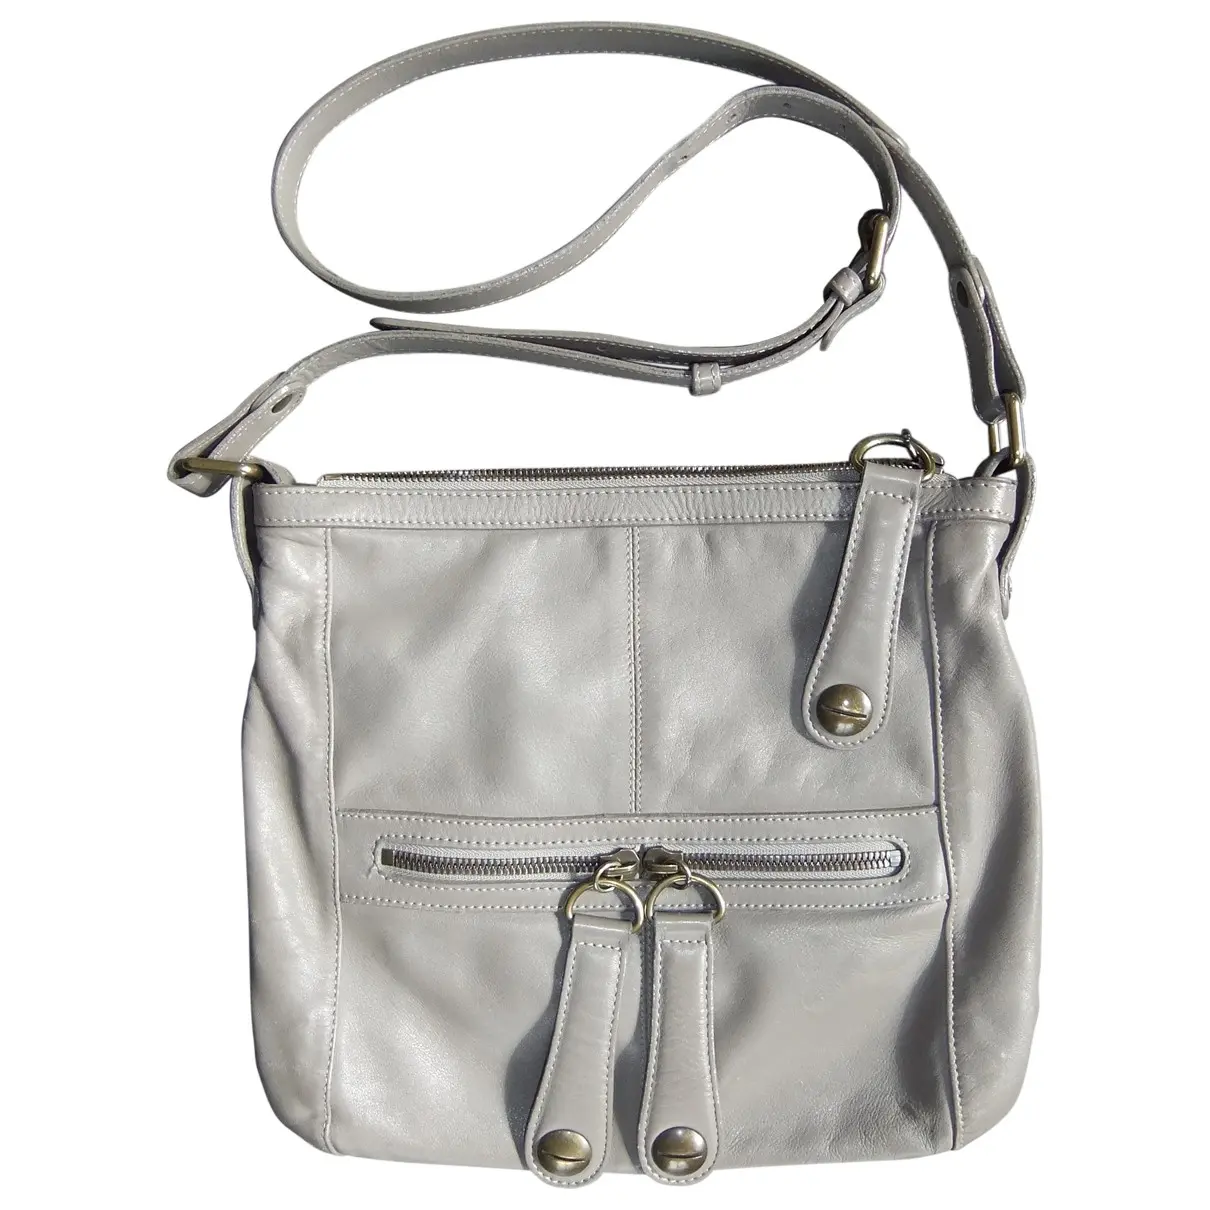 Grey Leather Handbag Gerard Darel